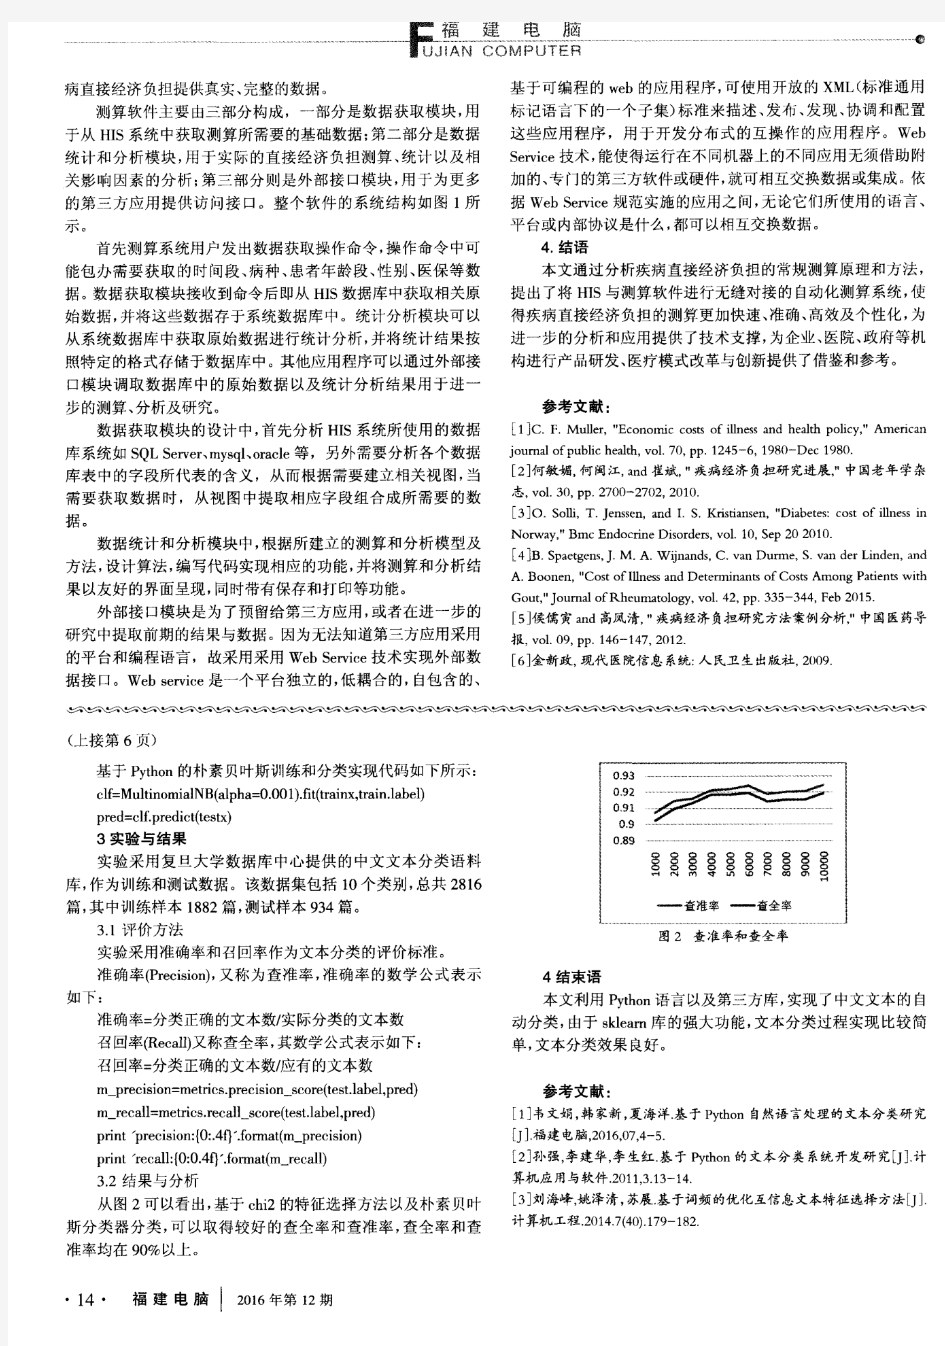 基于Python的中文文本分类的实现